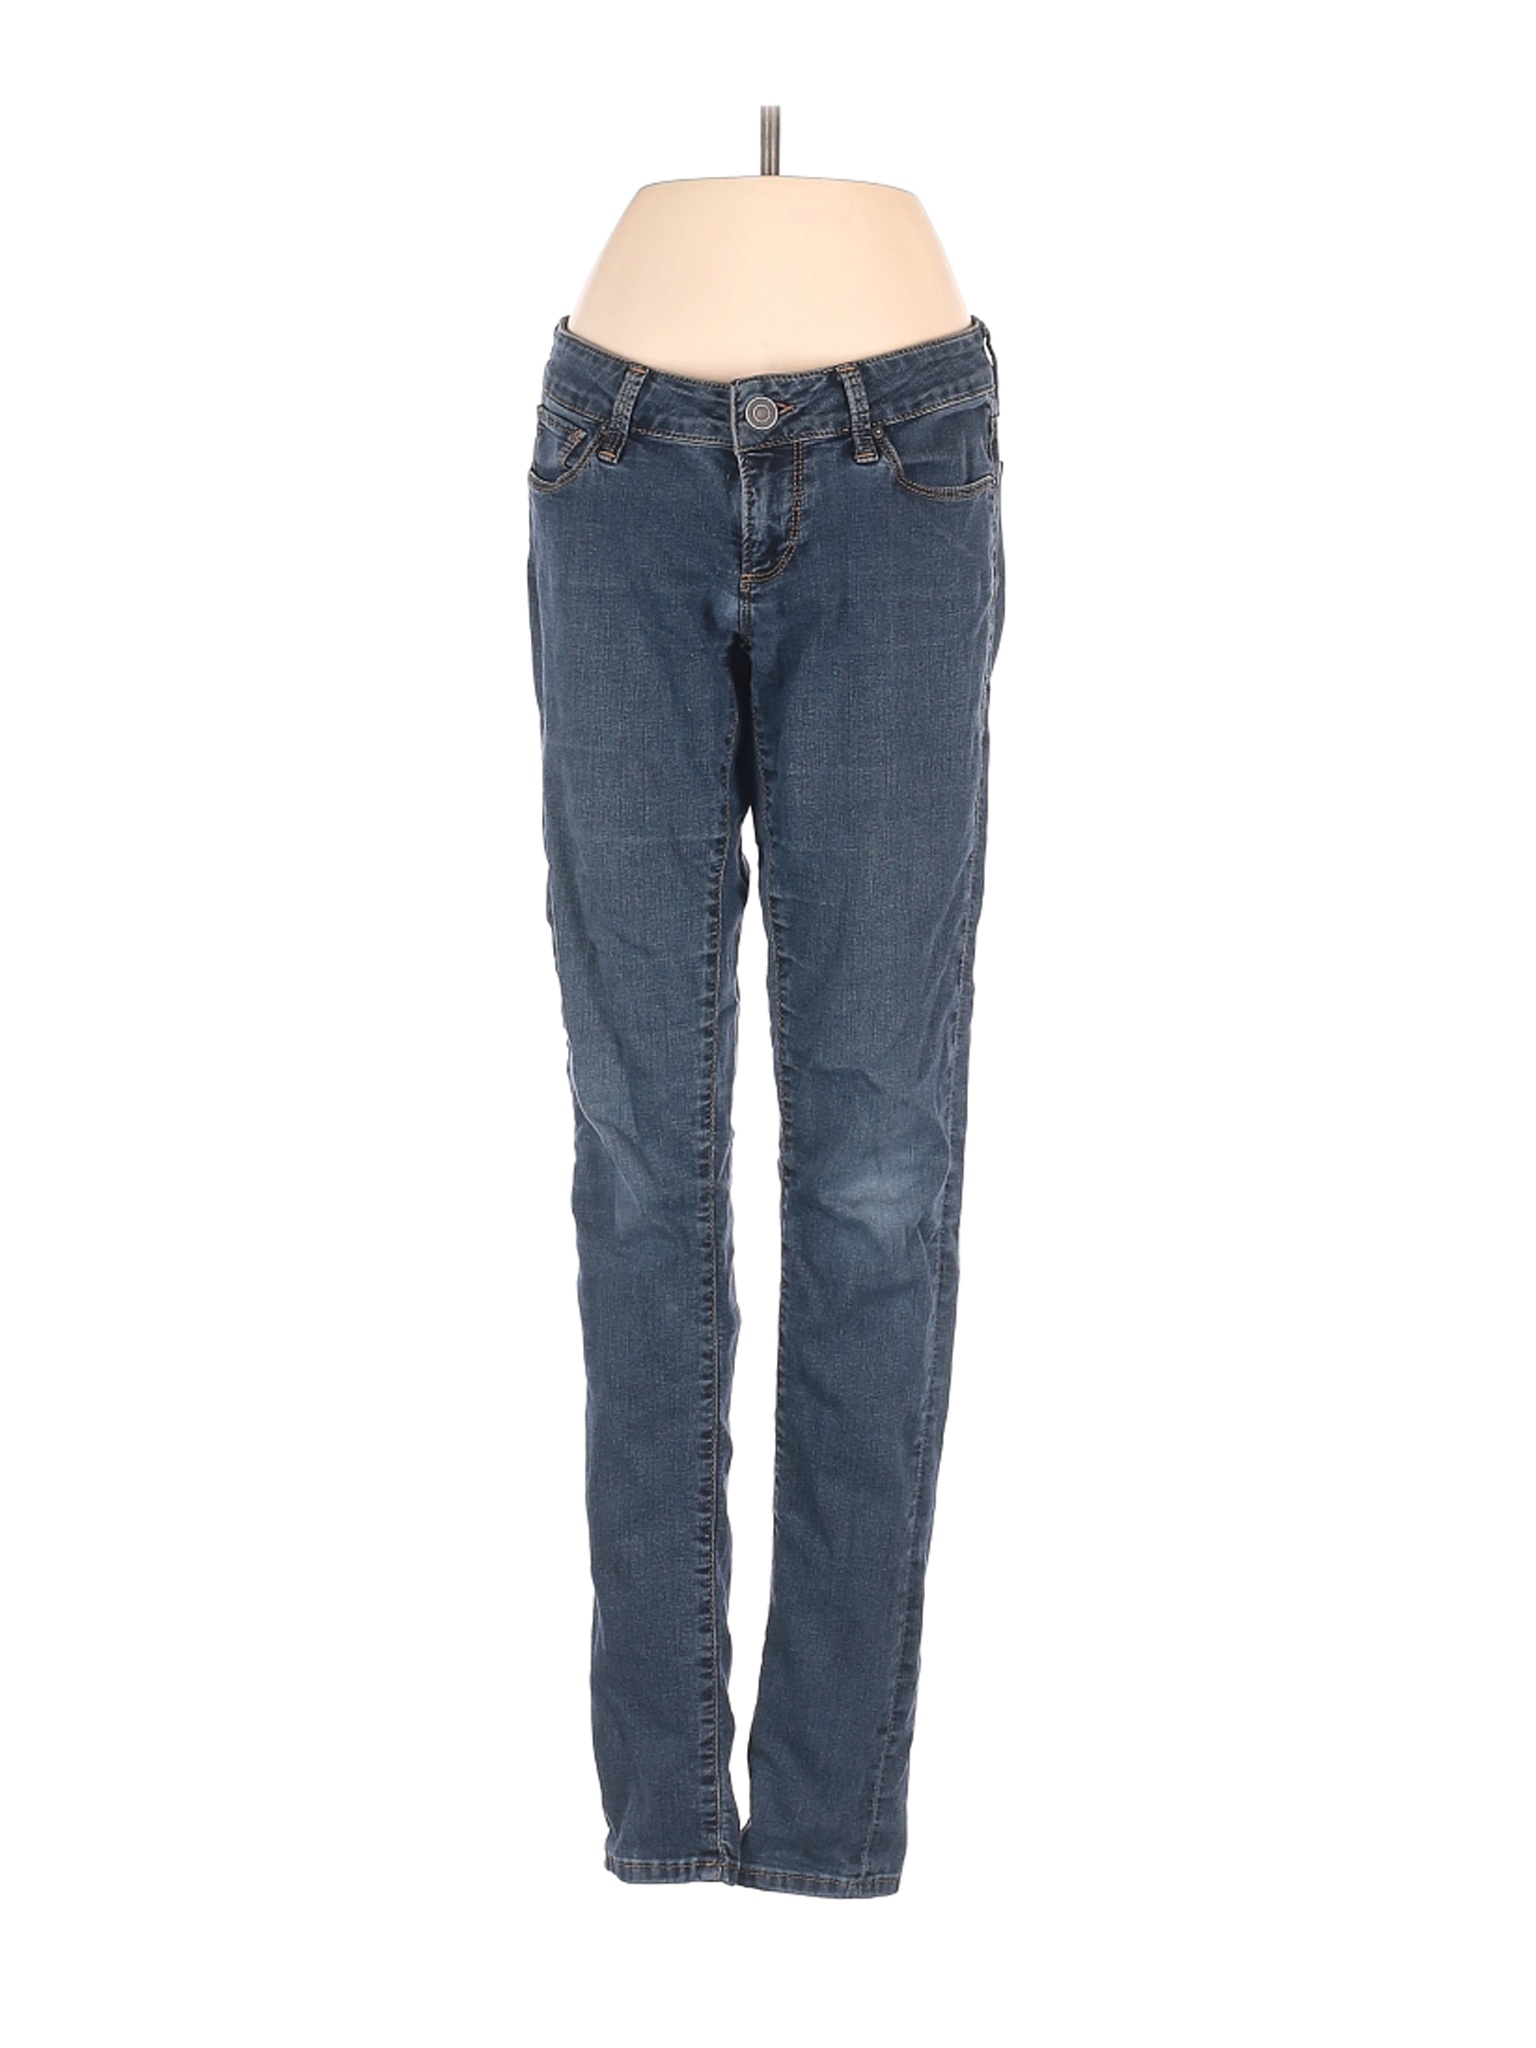 Aqua Women Blue Jeans 25W | eBay